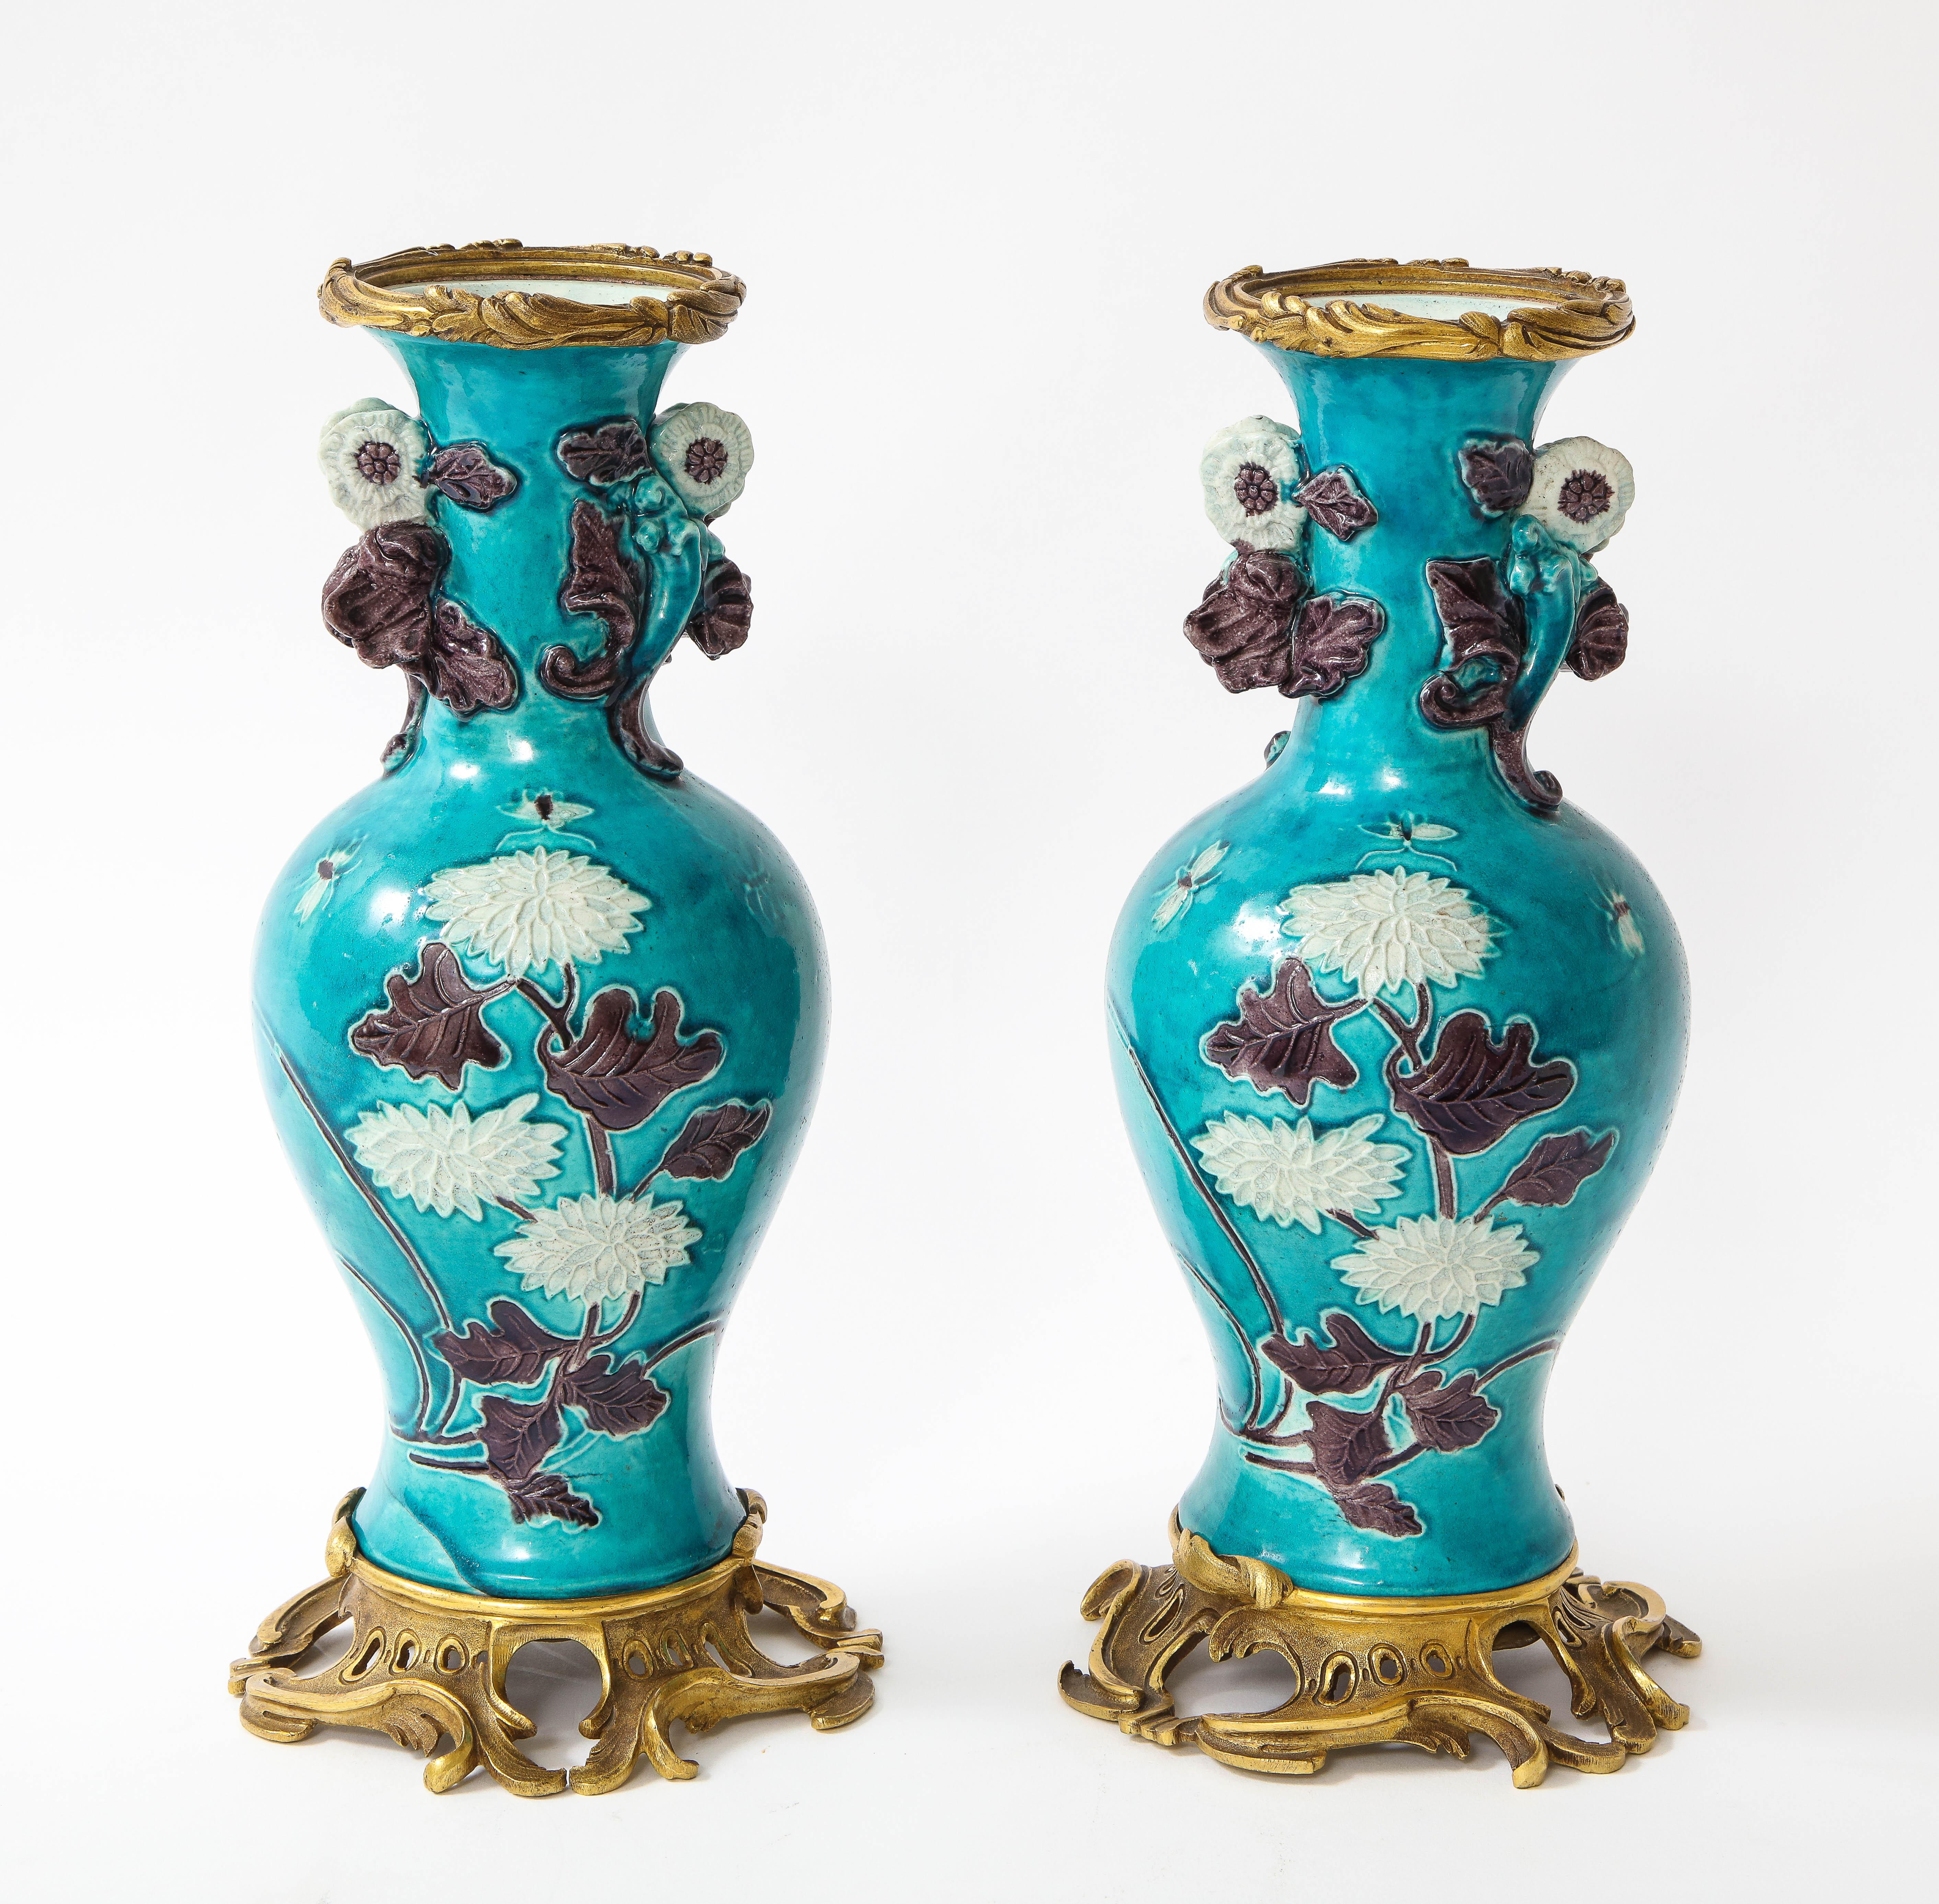 Ein unglaubliches Paar chinesischer Porzellanvasen im Louis-XVI-Stil aus dem 18. Jahrhundert mit französischen Doré-Bronzebeschlägen aus dem 19. Das Porzellan wurde um 1700 in Porzellan hergestellt. Die Vase hat einen türkisfarbenen Grund mit